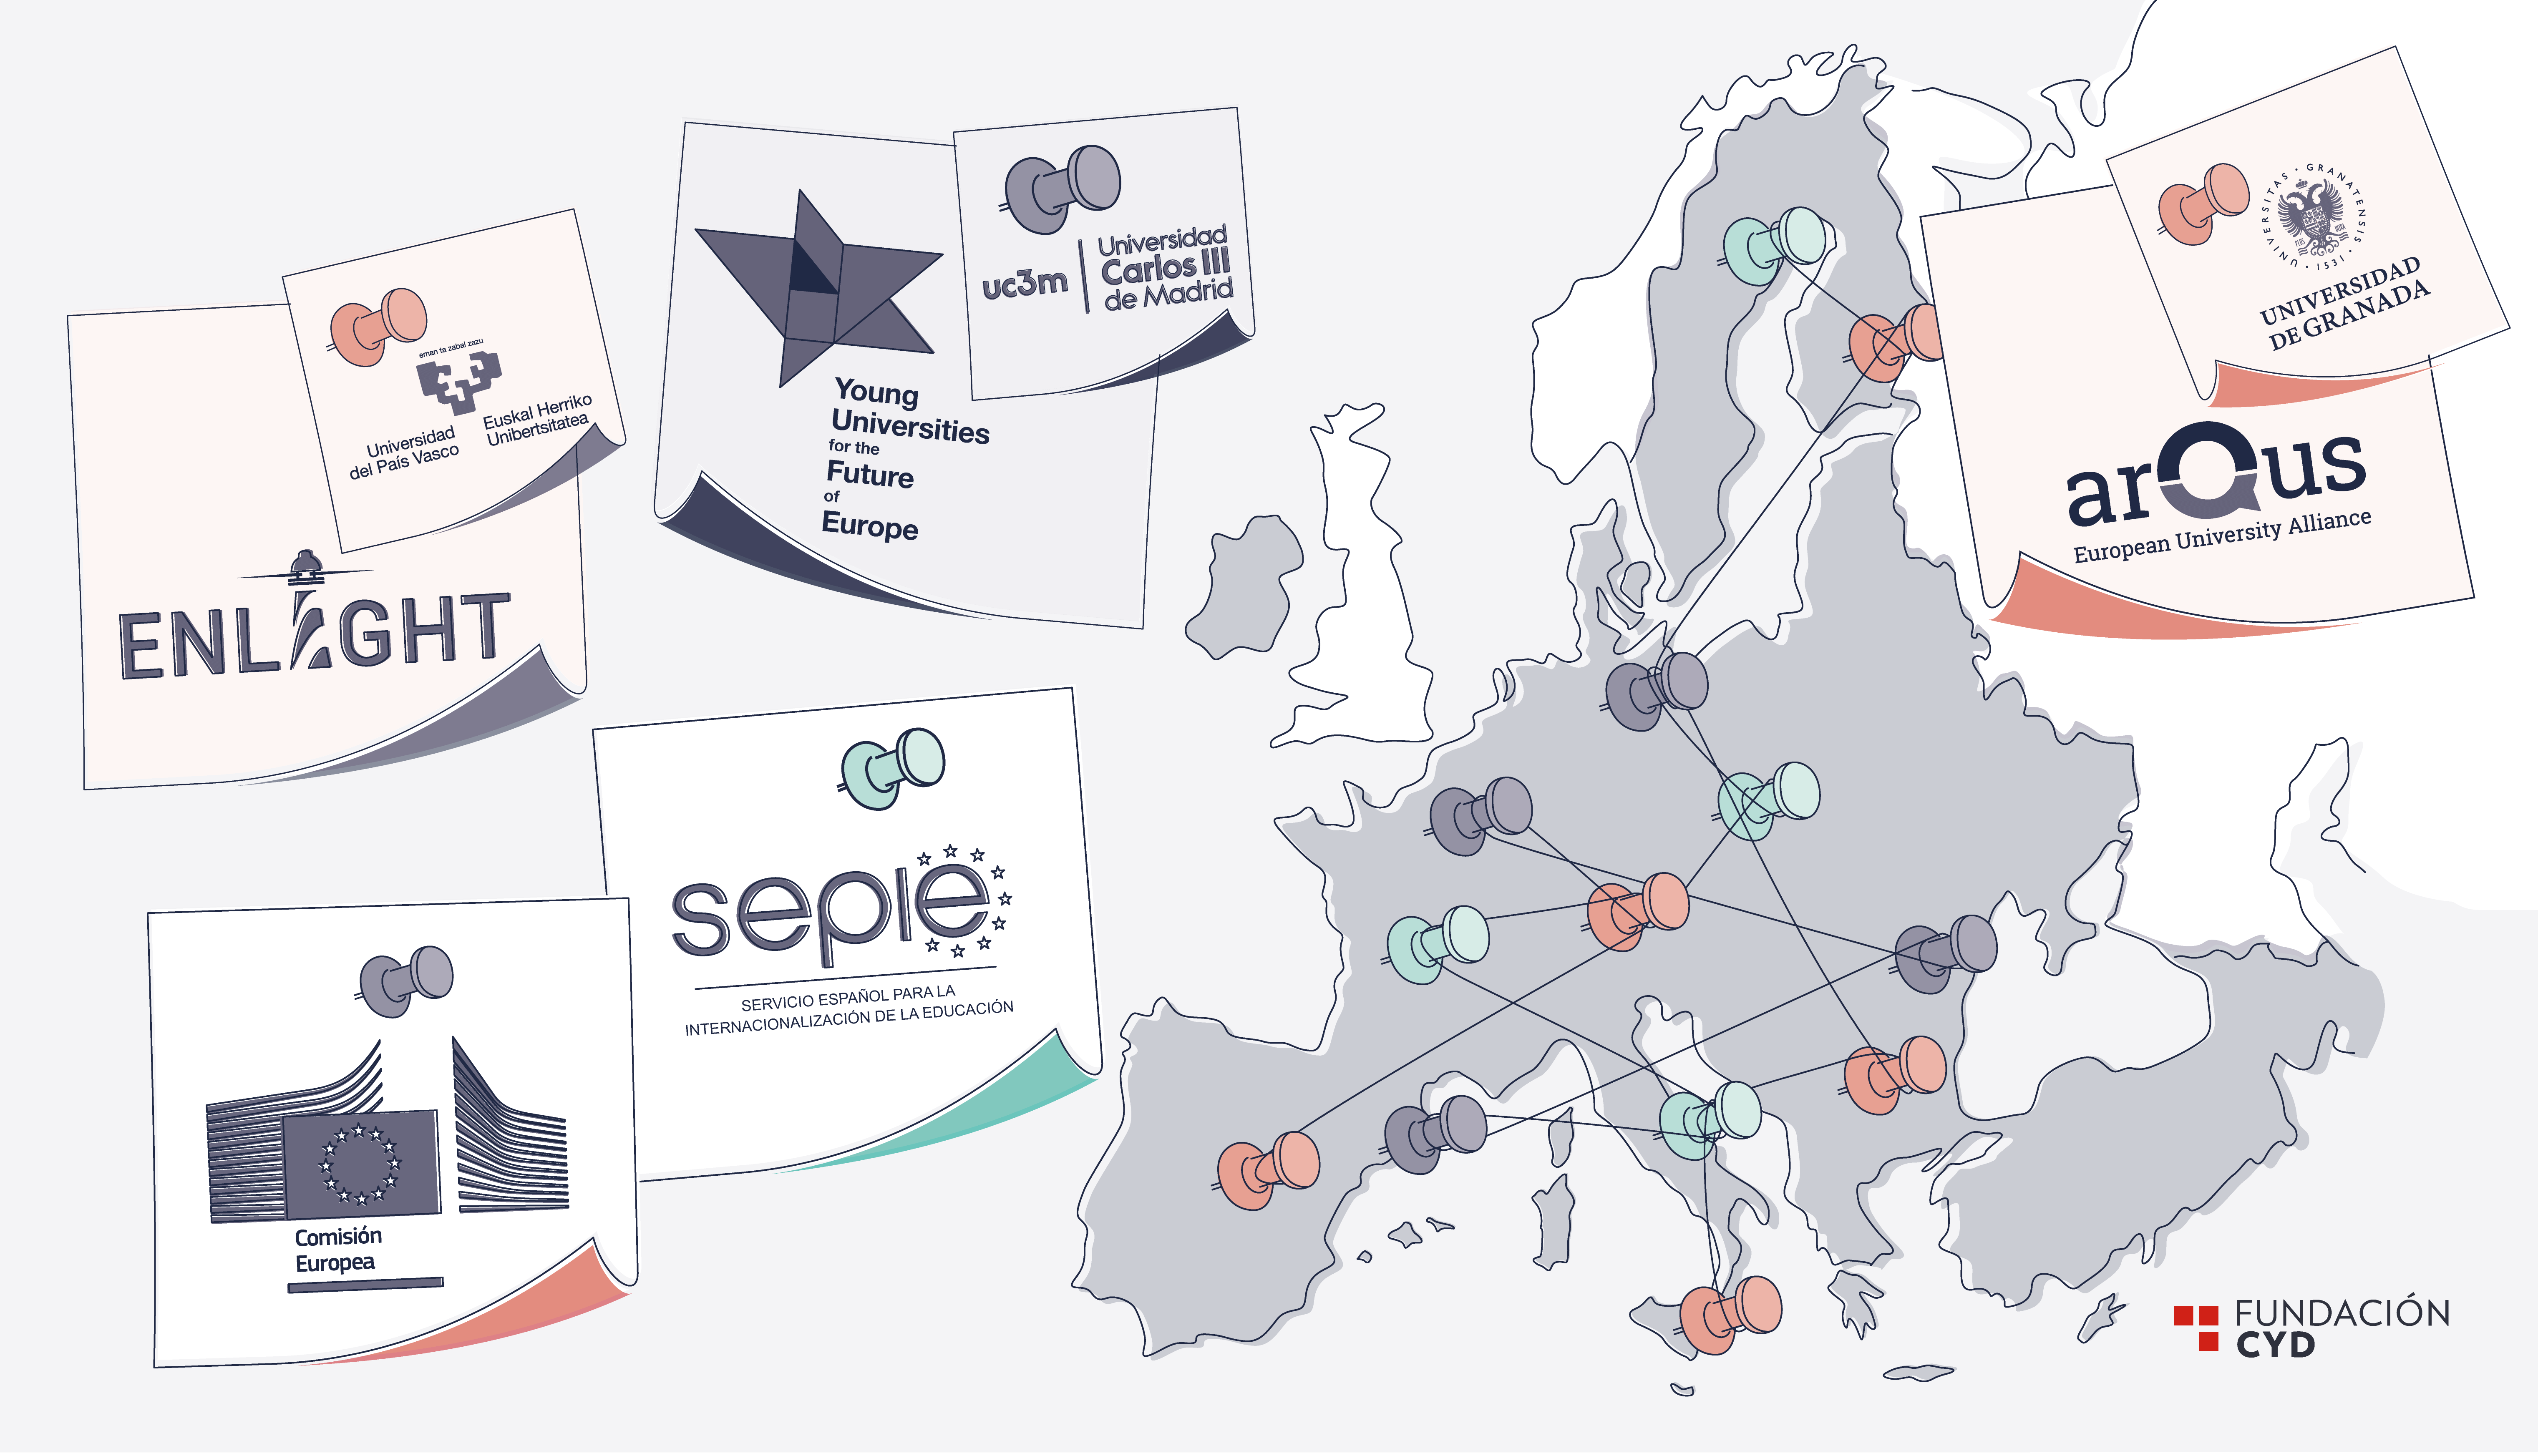 Universidades Europeas y Espacio Europeo de Educación Superior